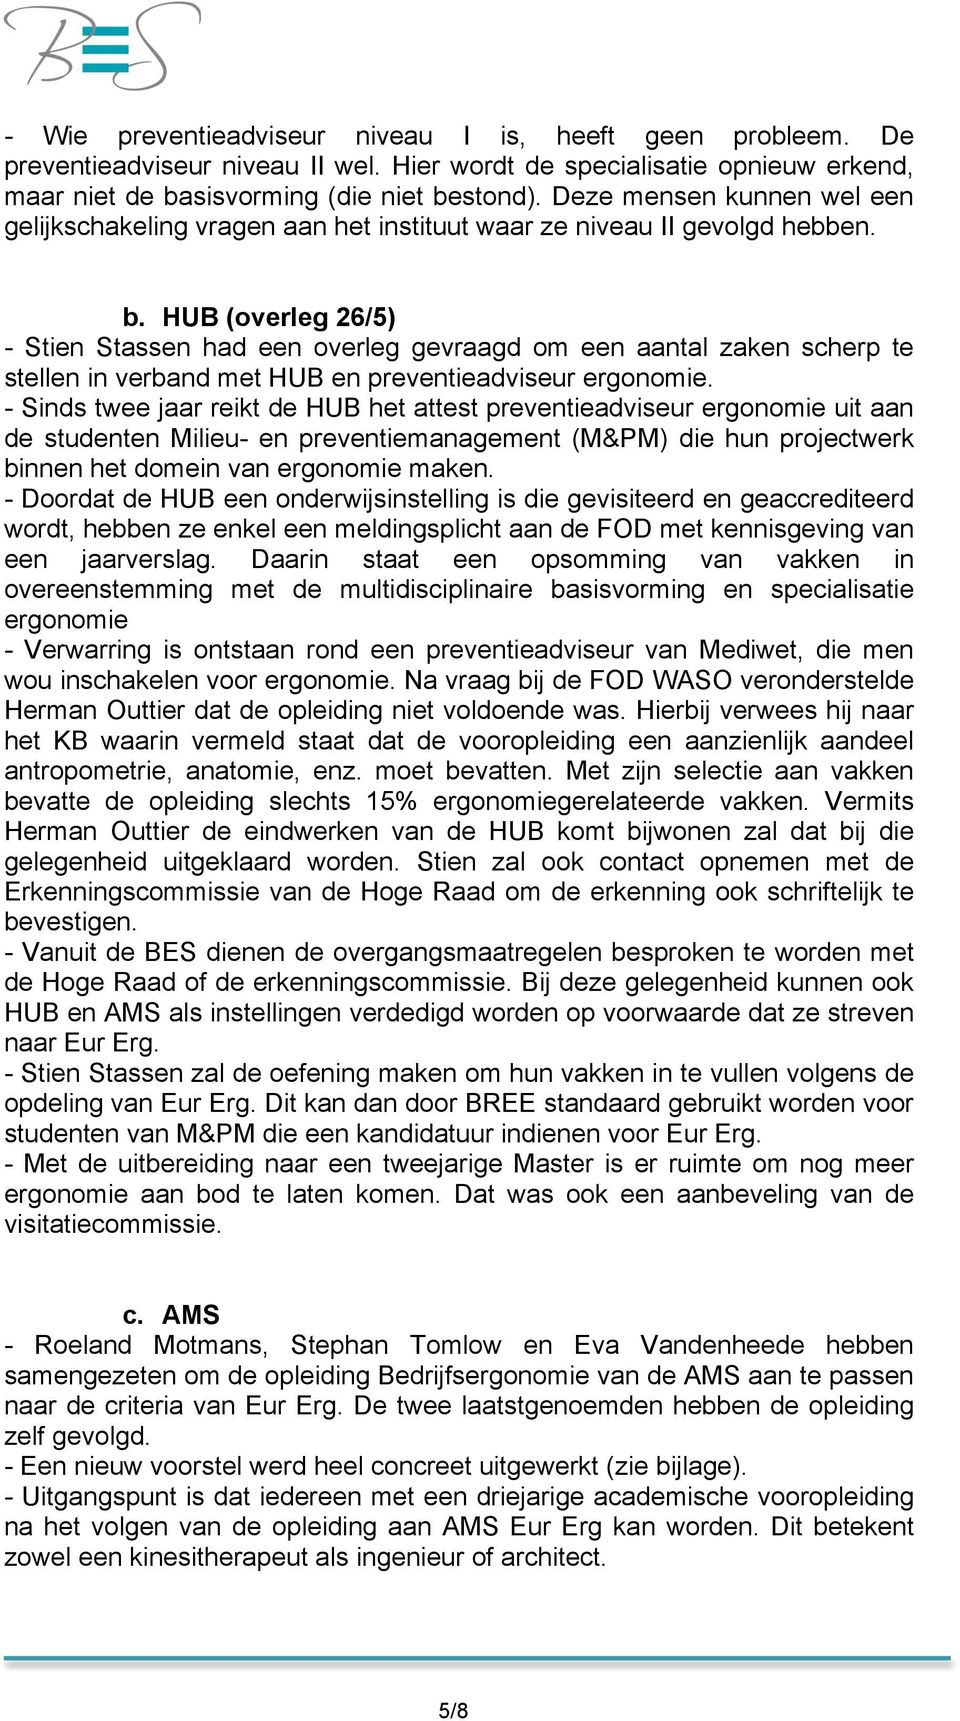 HUB (overleg 26/5) - Stien Stassen had een overleg gevraagd om een aantal zaken scherp te stellen in verband met HUB en preventieadviseur ergonomie.